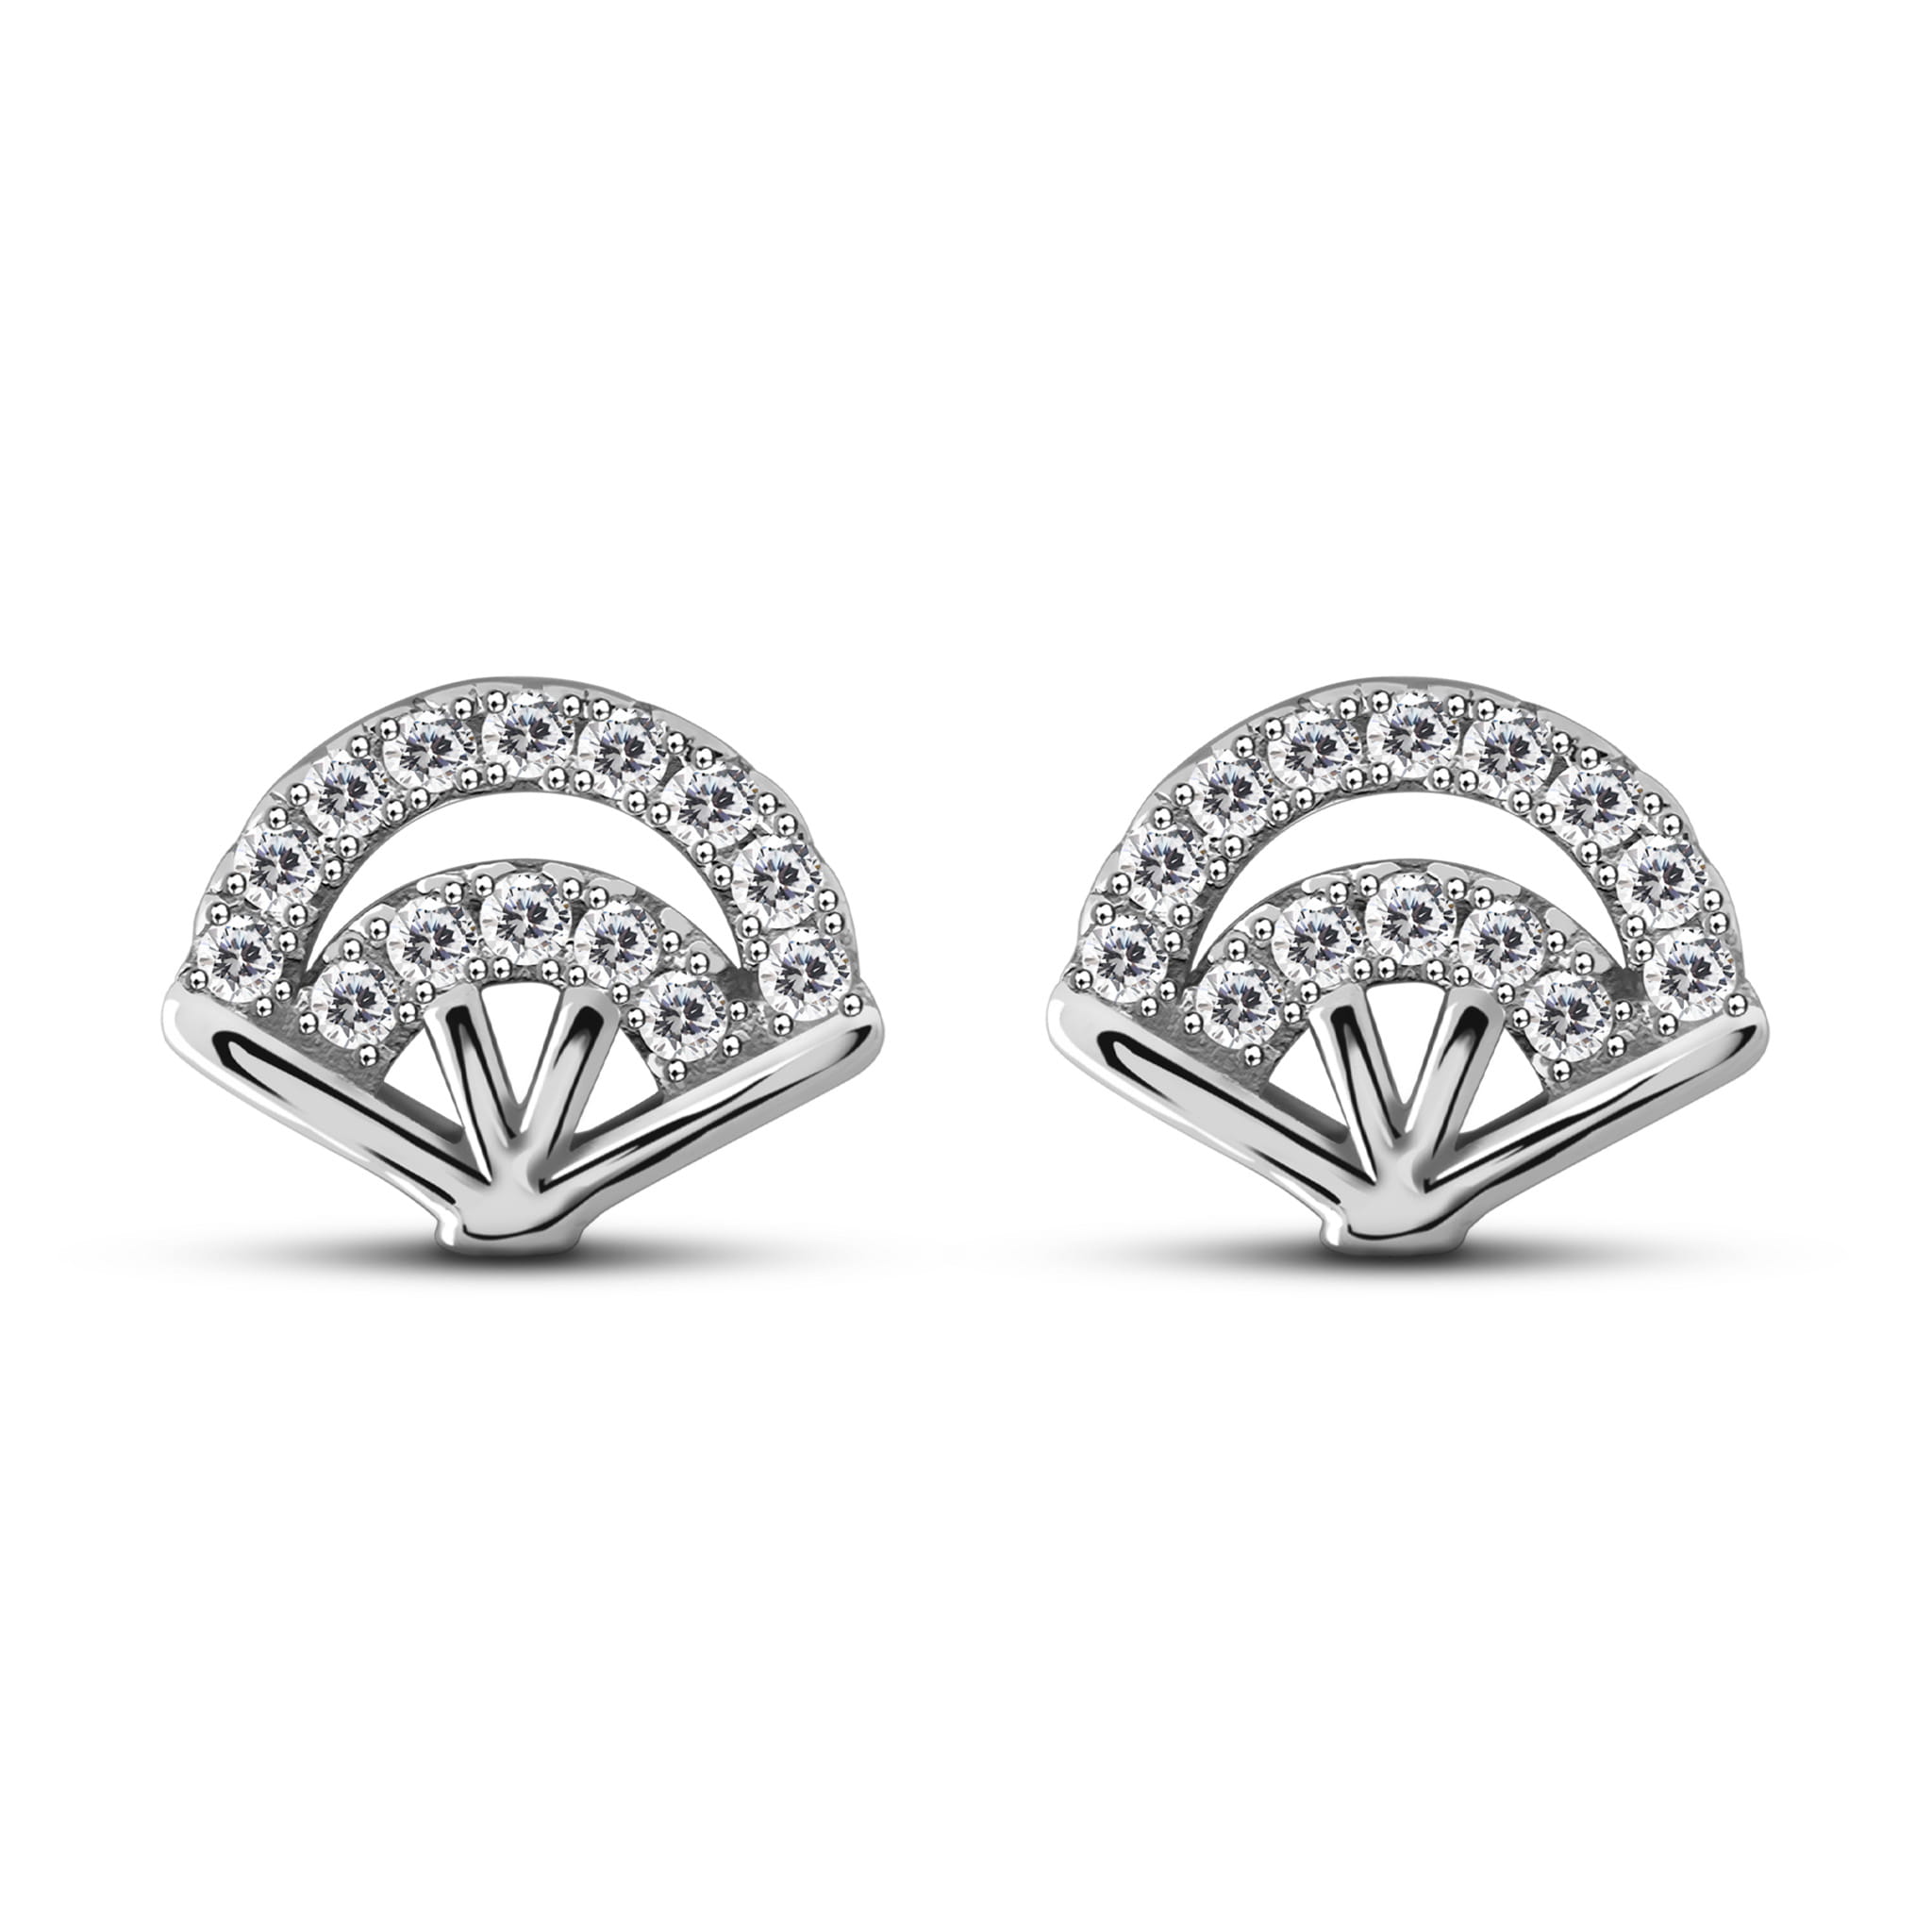 Artistic fan White Zirconia Sterling Silver Stud Earrings